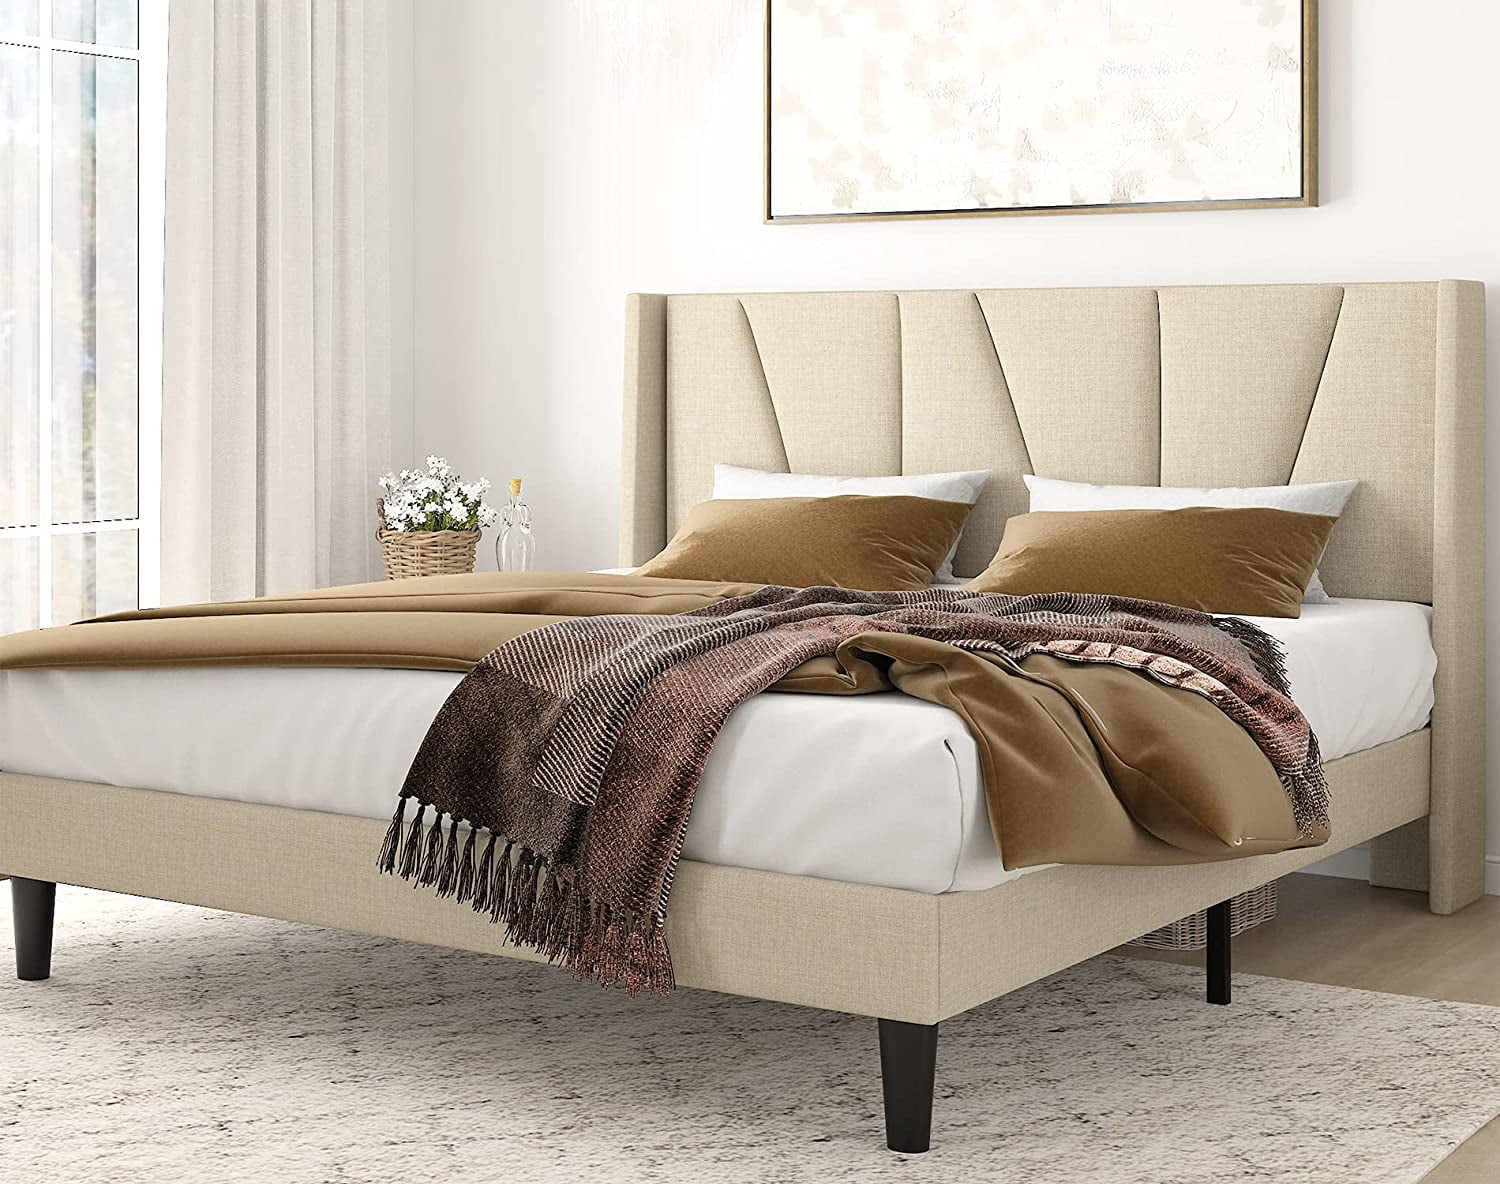 Upholstered Platform Bed Frame, Amolife King Size Platform Bed Frame With Headboard And 4 Storage Drawers